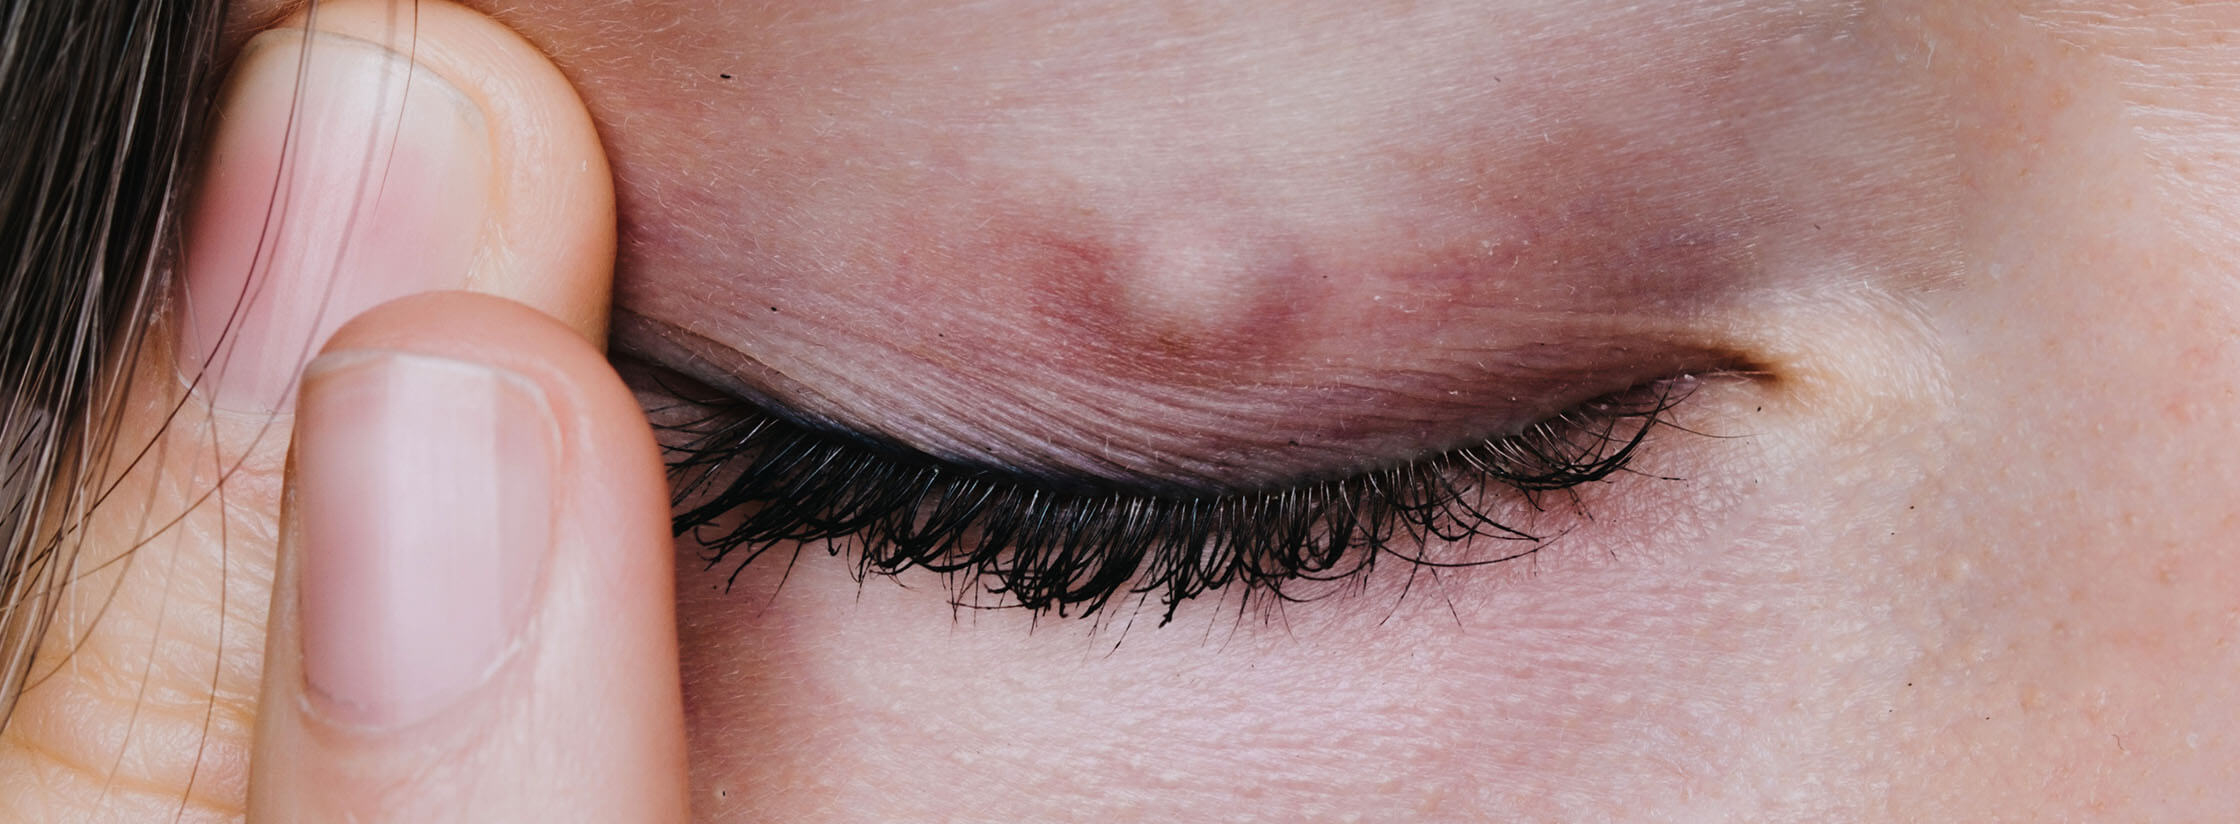 Een close up van een ooglid met een chalazion